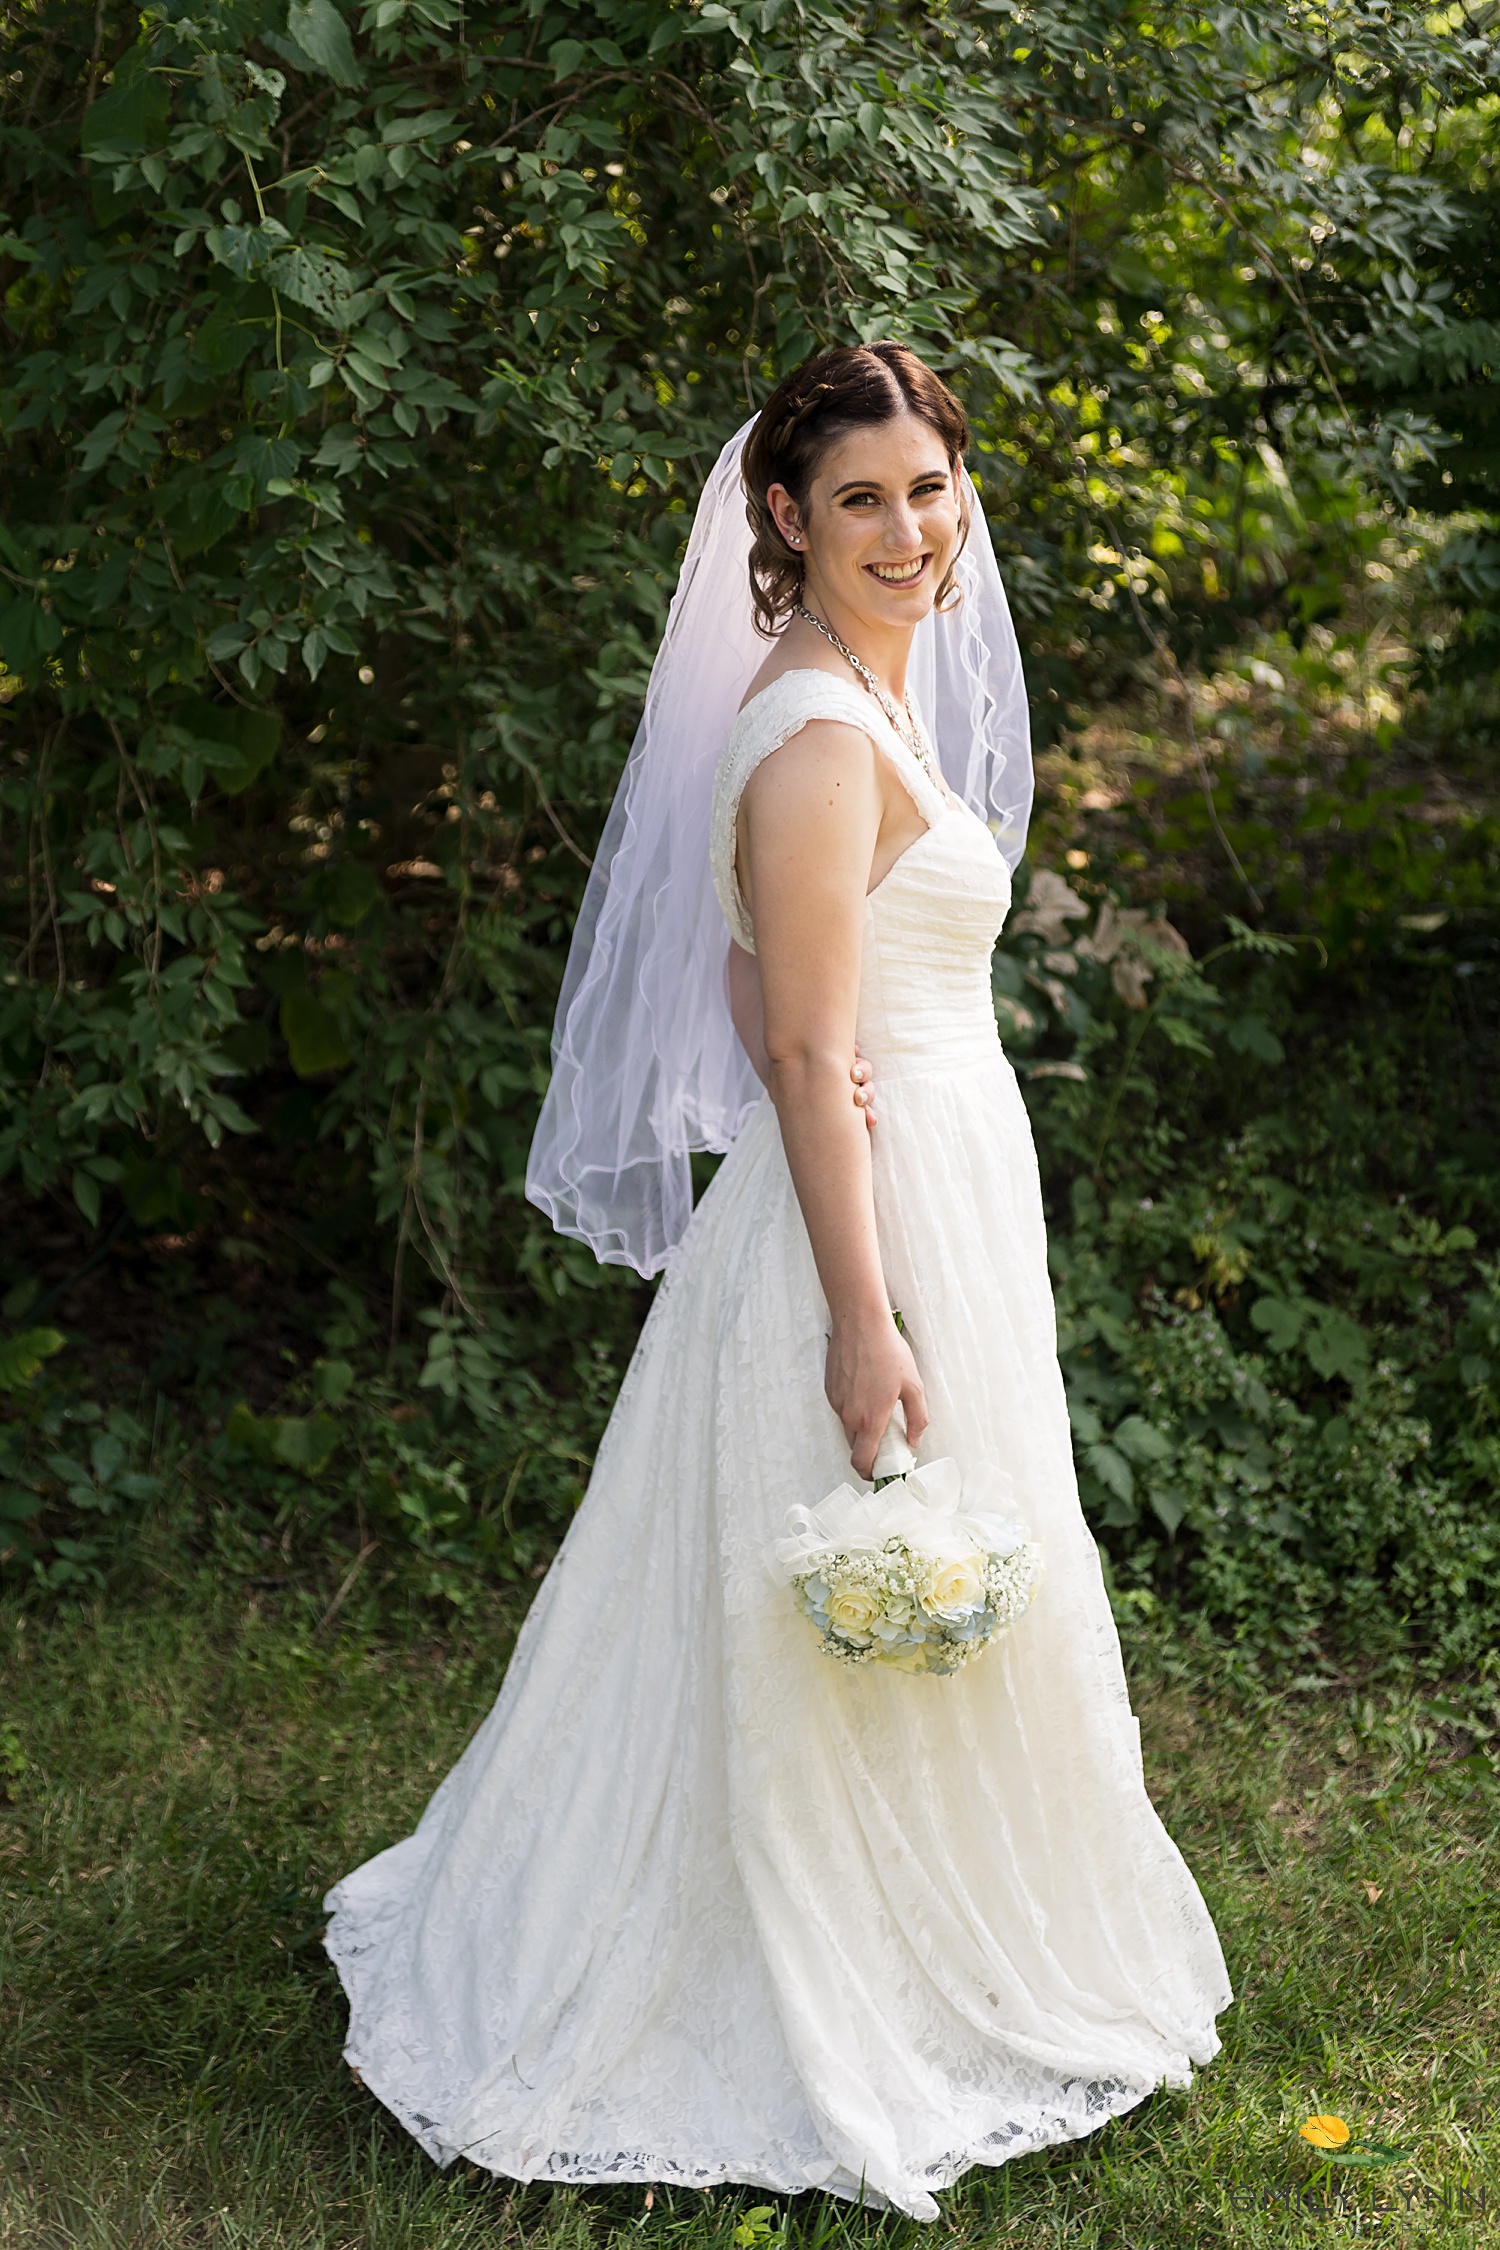 Bride's Solo Photo. Wedding-Photos-at-Enchanted-Acres-KC-Wedding-Photographer-Emily-Lynn-Photography.